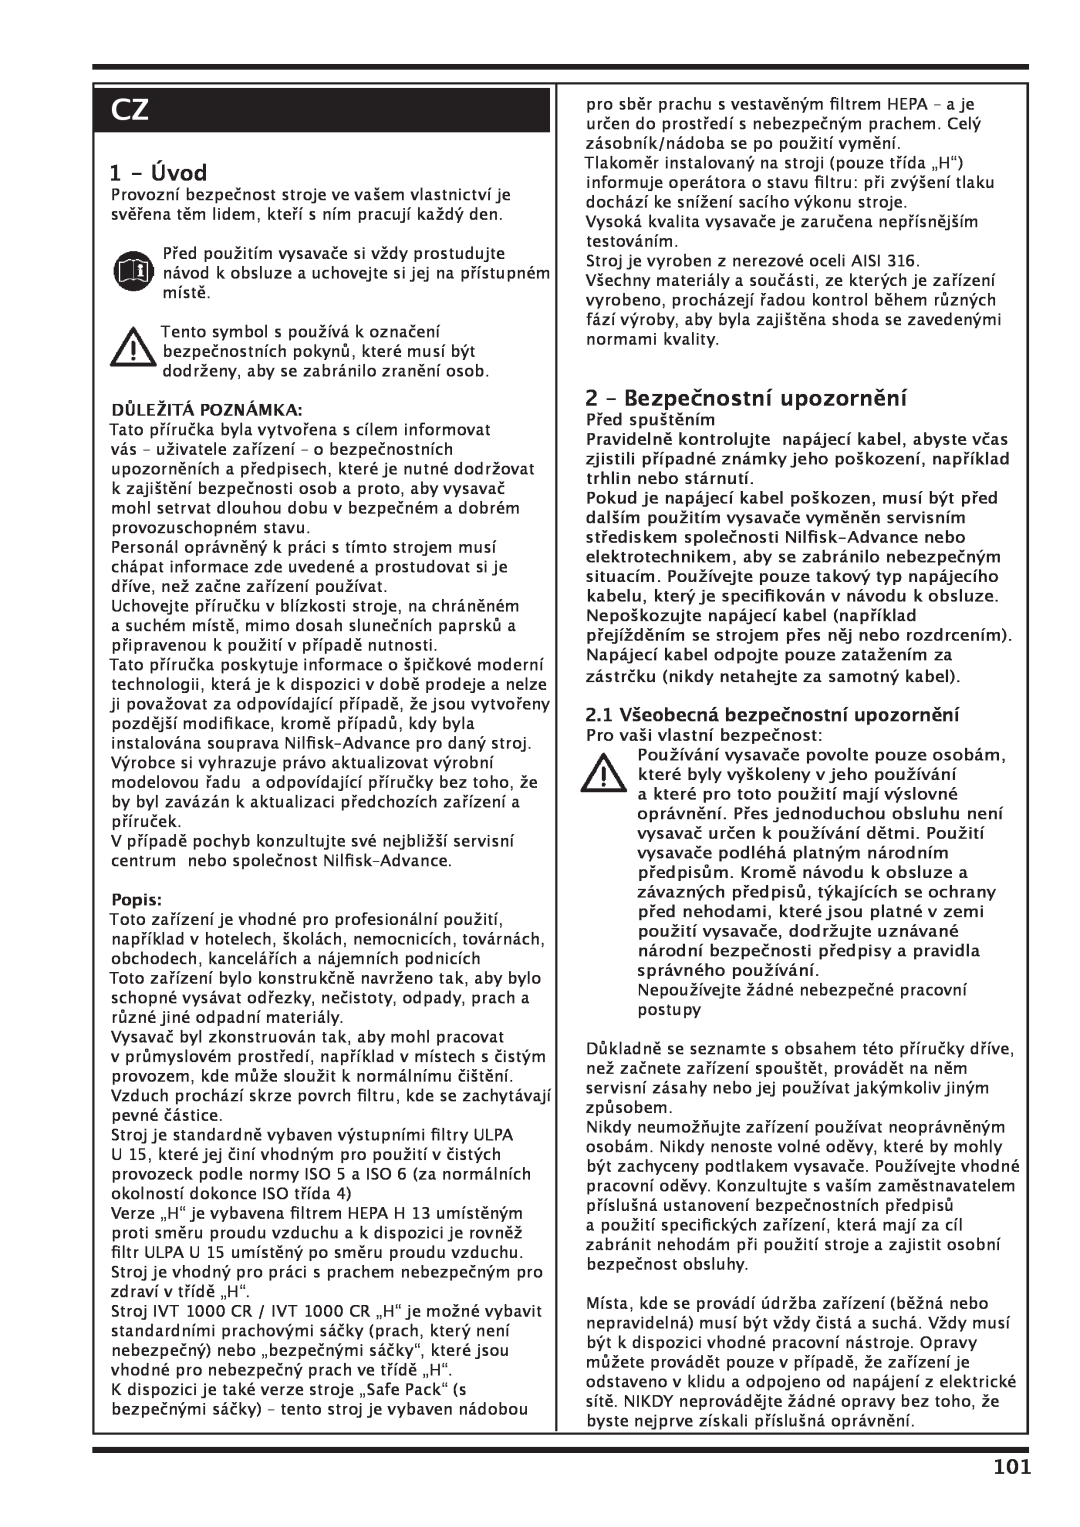 Nilfisk-Advance America IVT 1000 CR H 1 - Úvod, 2 – Bezpečnostní upozornění, 2.1Všeobecná bezpečnostní upozornění, Popis 